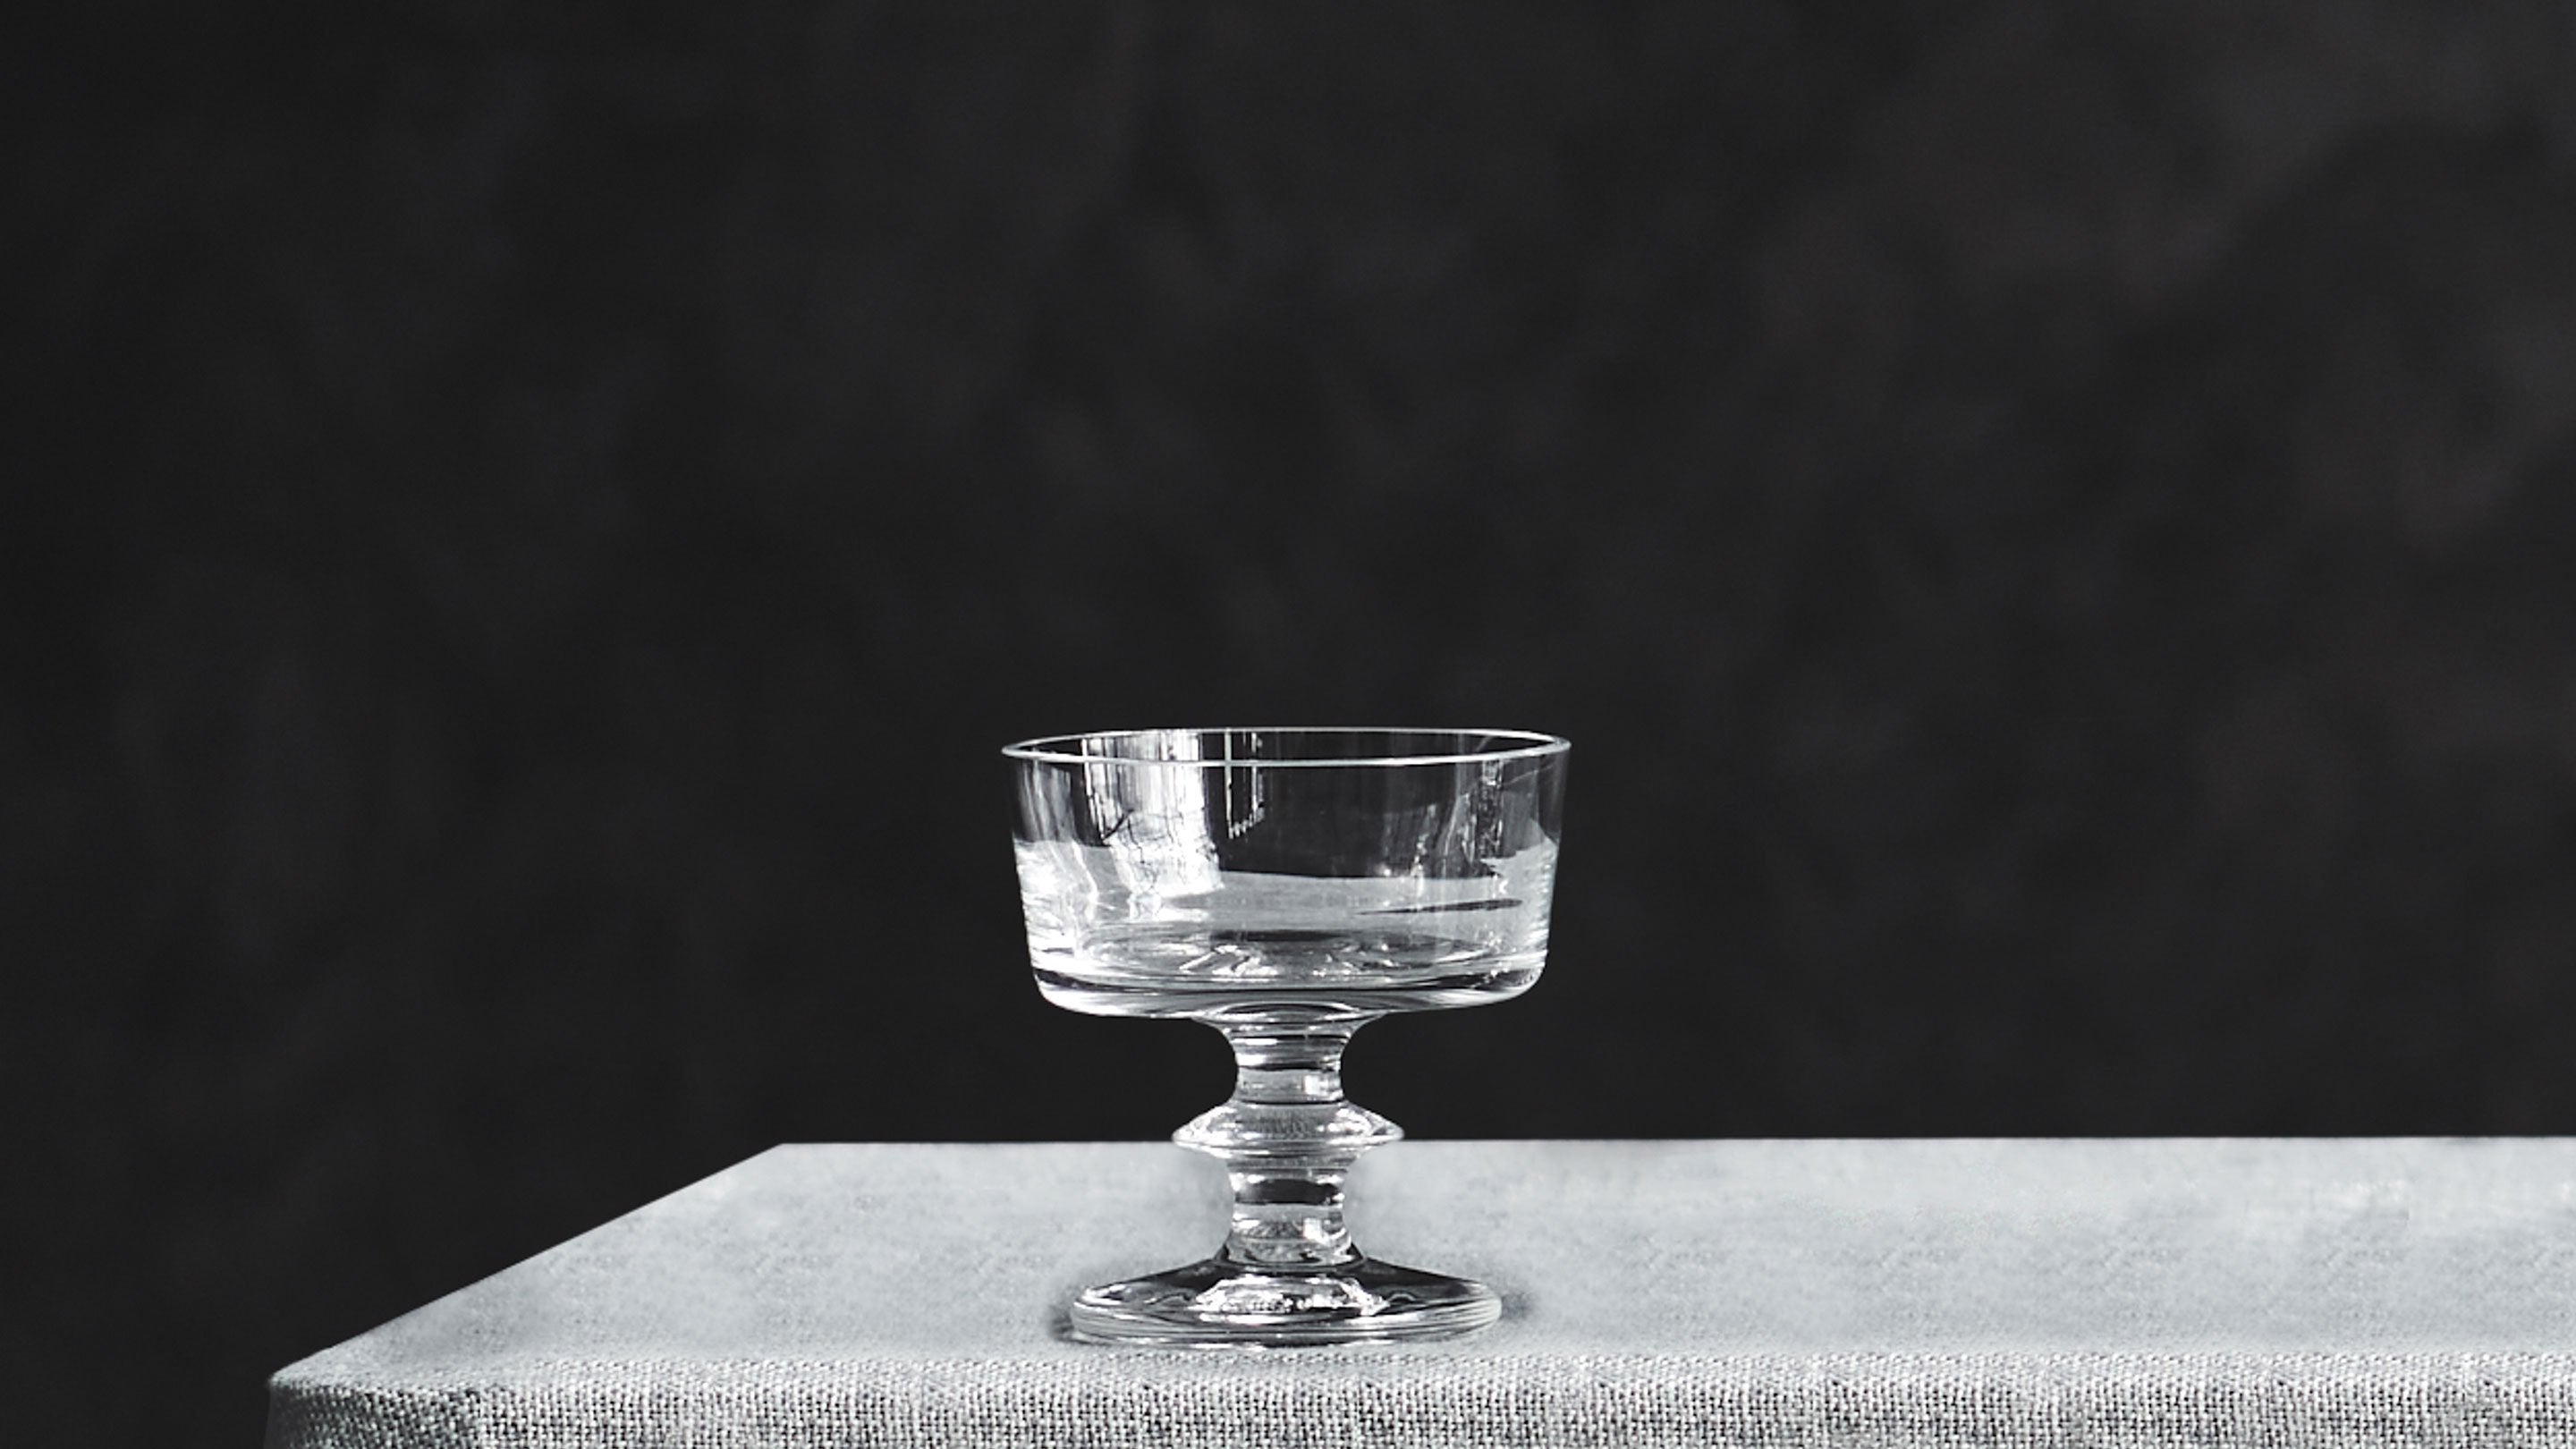 Unique Martini Glass, Crystal Martini Coupe Glass, Artistic